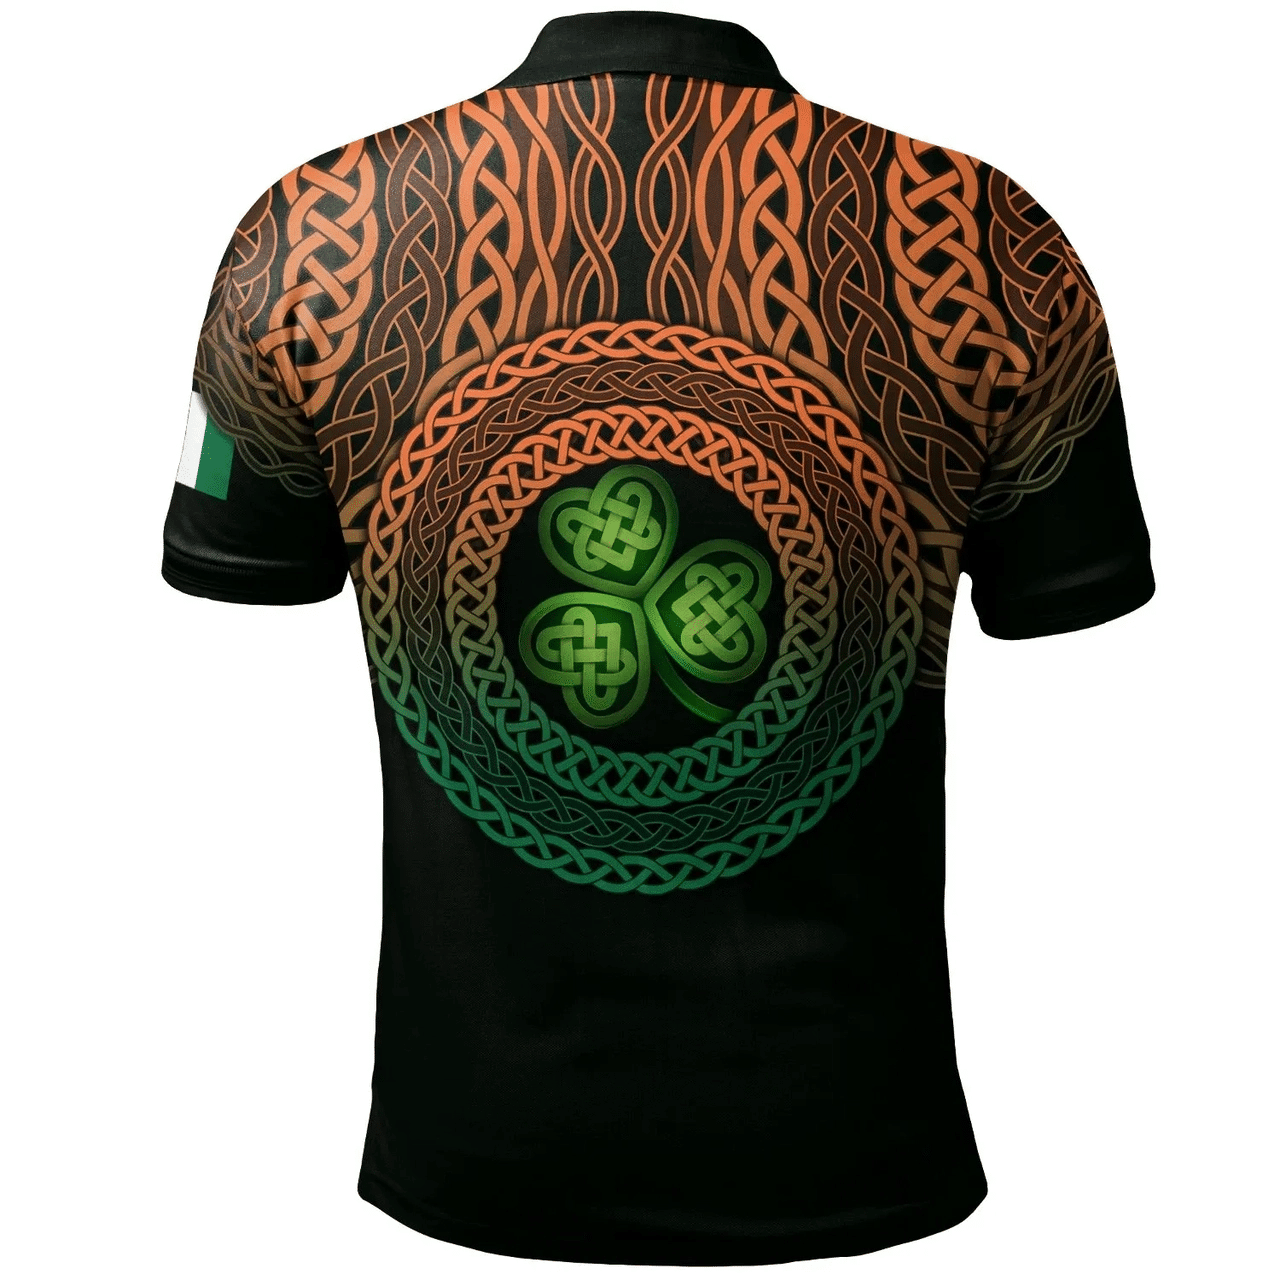 1stIreland Ireland Polo Shirt - Meares Irish Family Crest Polo Shirt - Celtic Pride A7 | 1stIreland.com